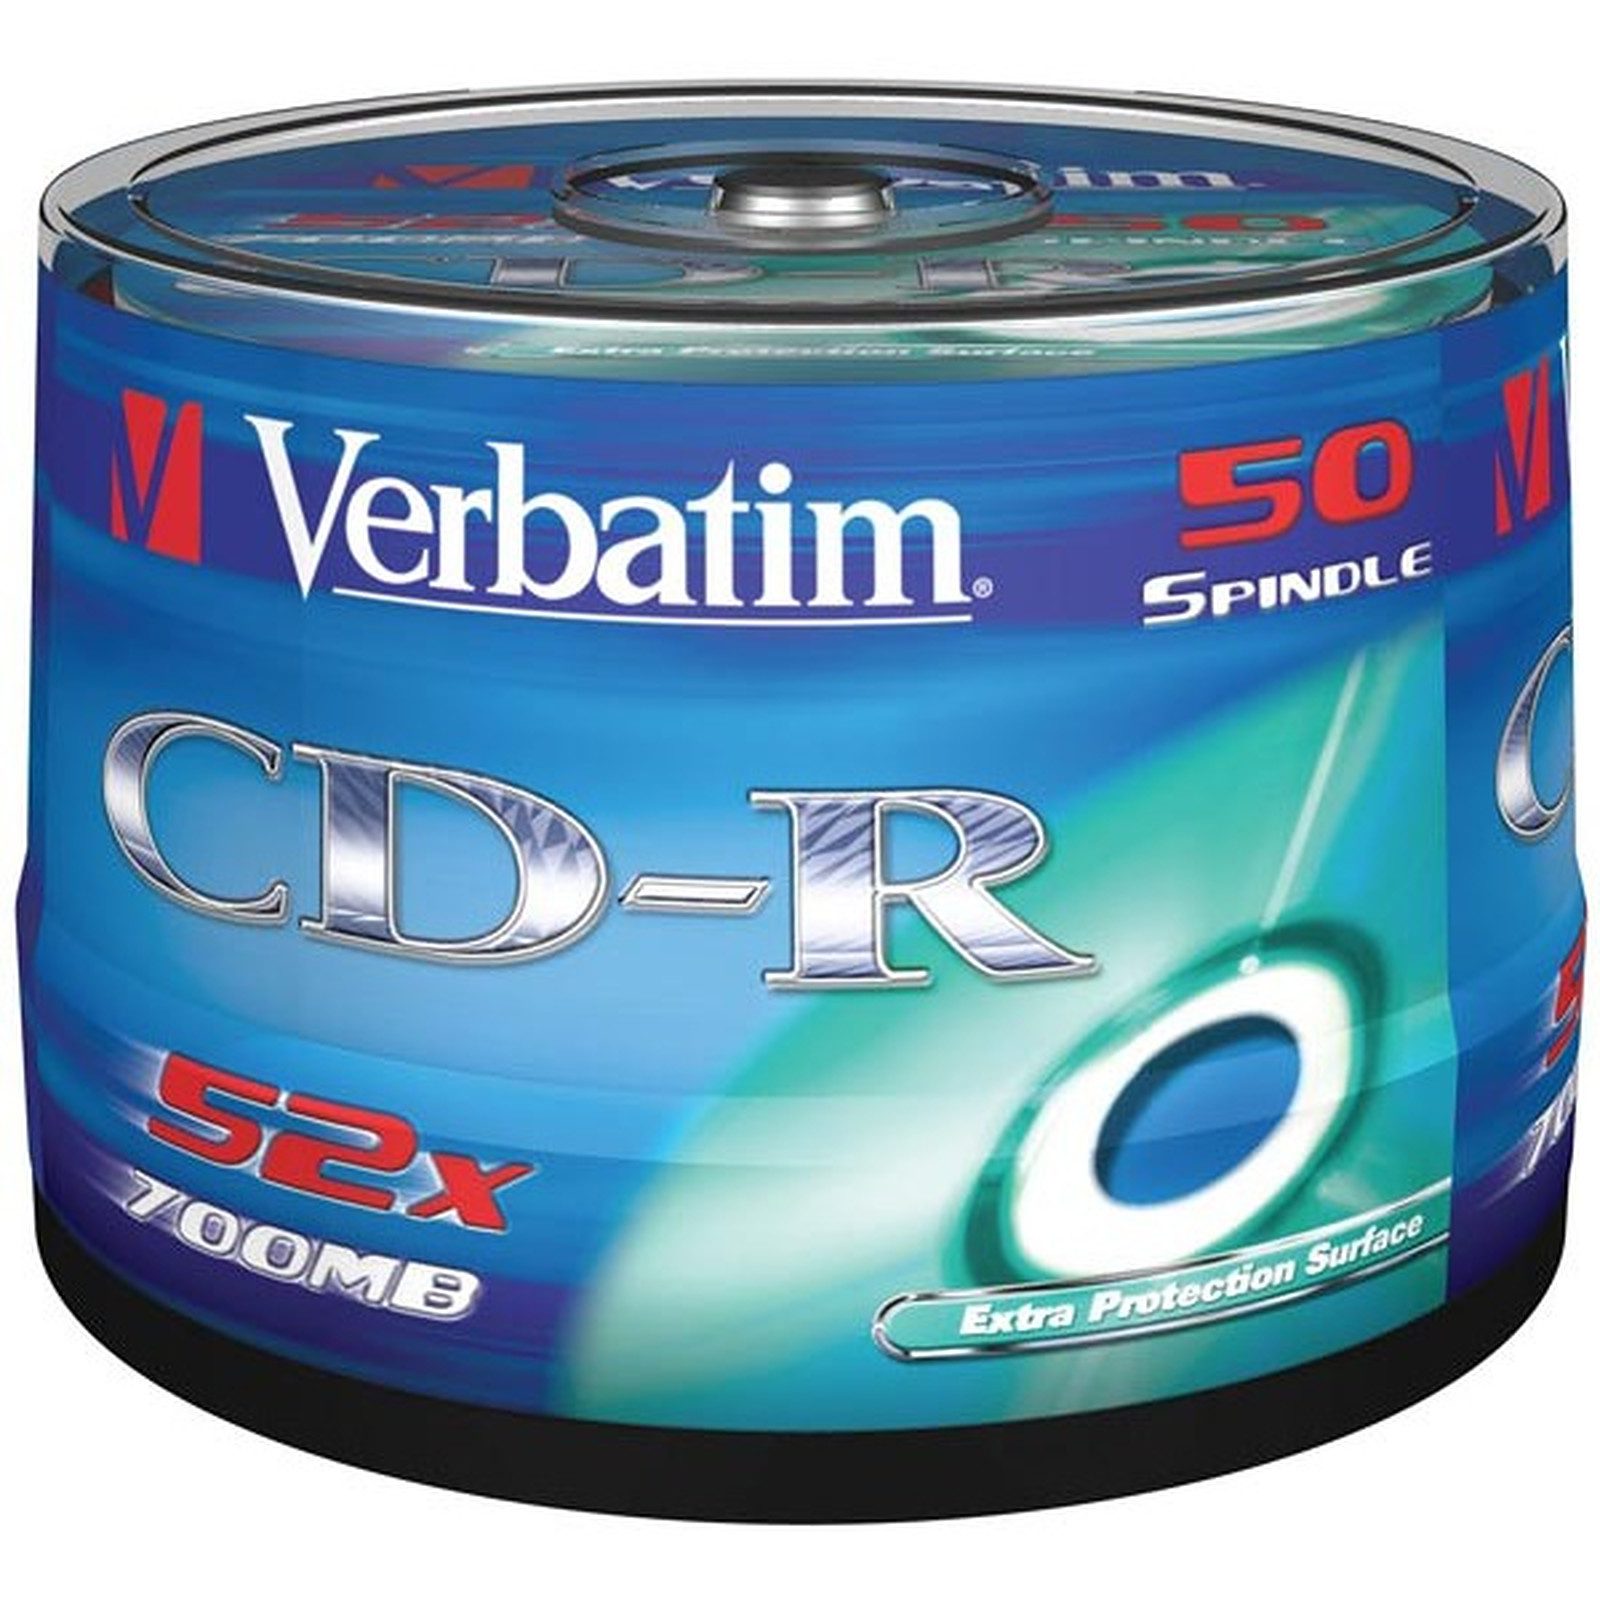 Verbatim CD-R 700 MB 52x (spindle of 50)